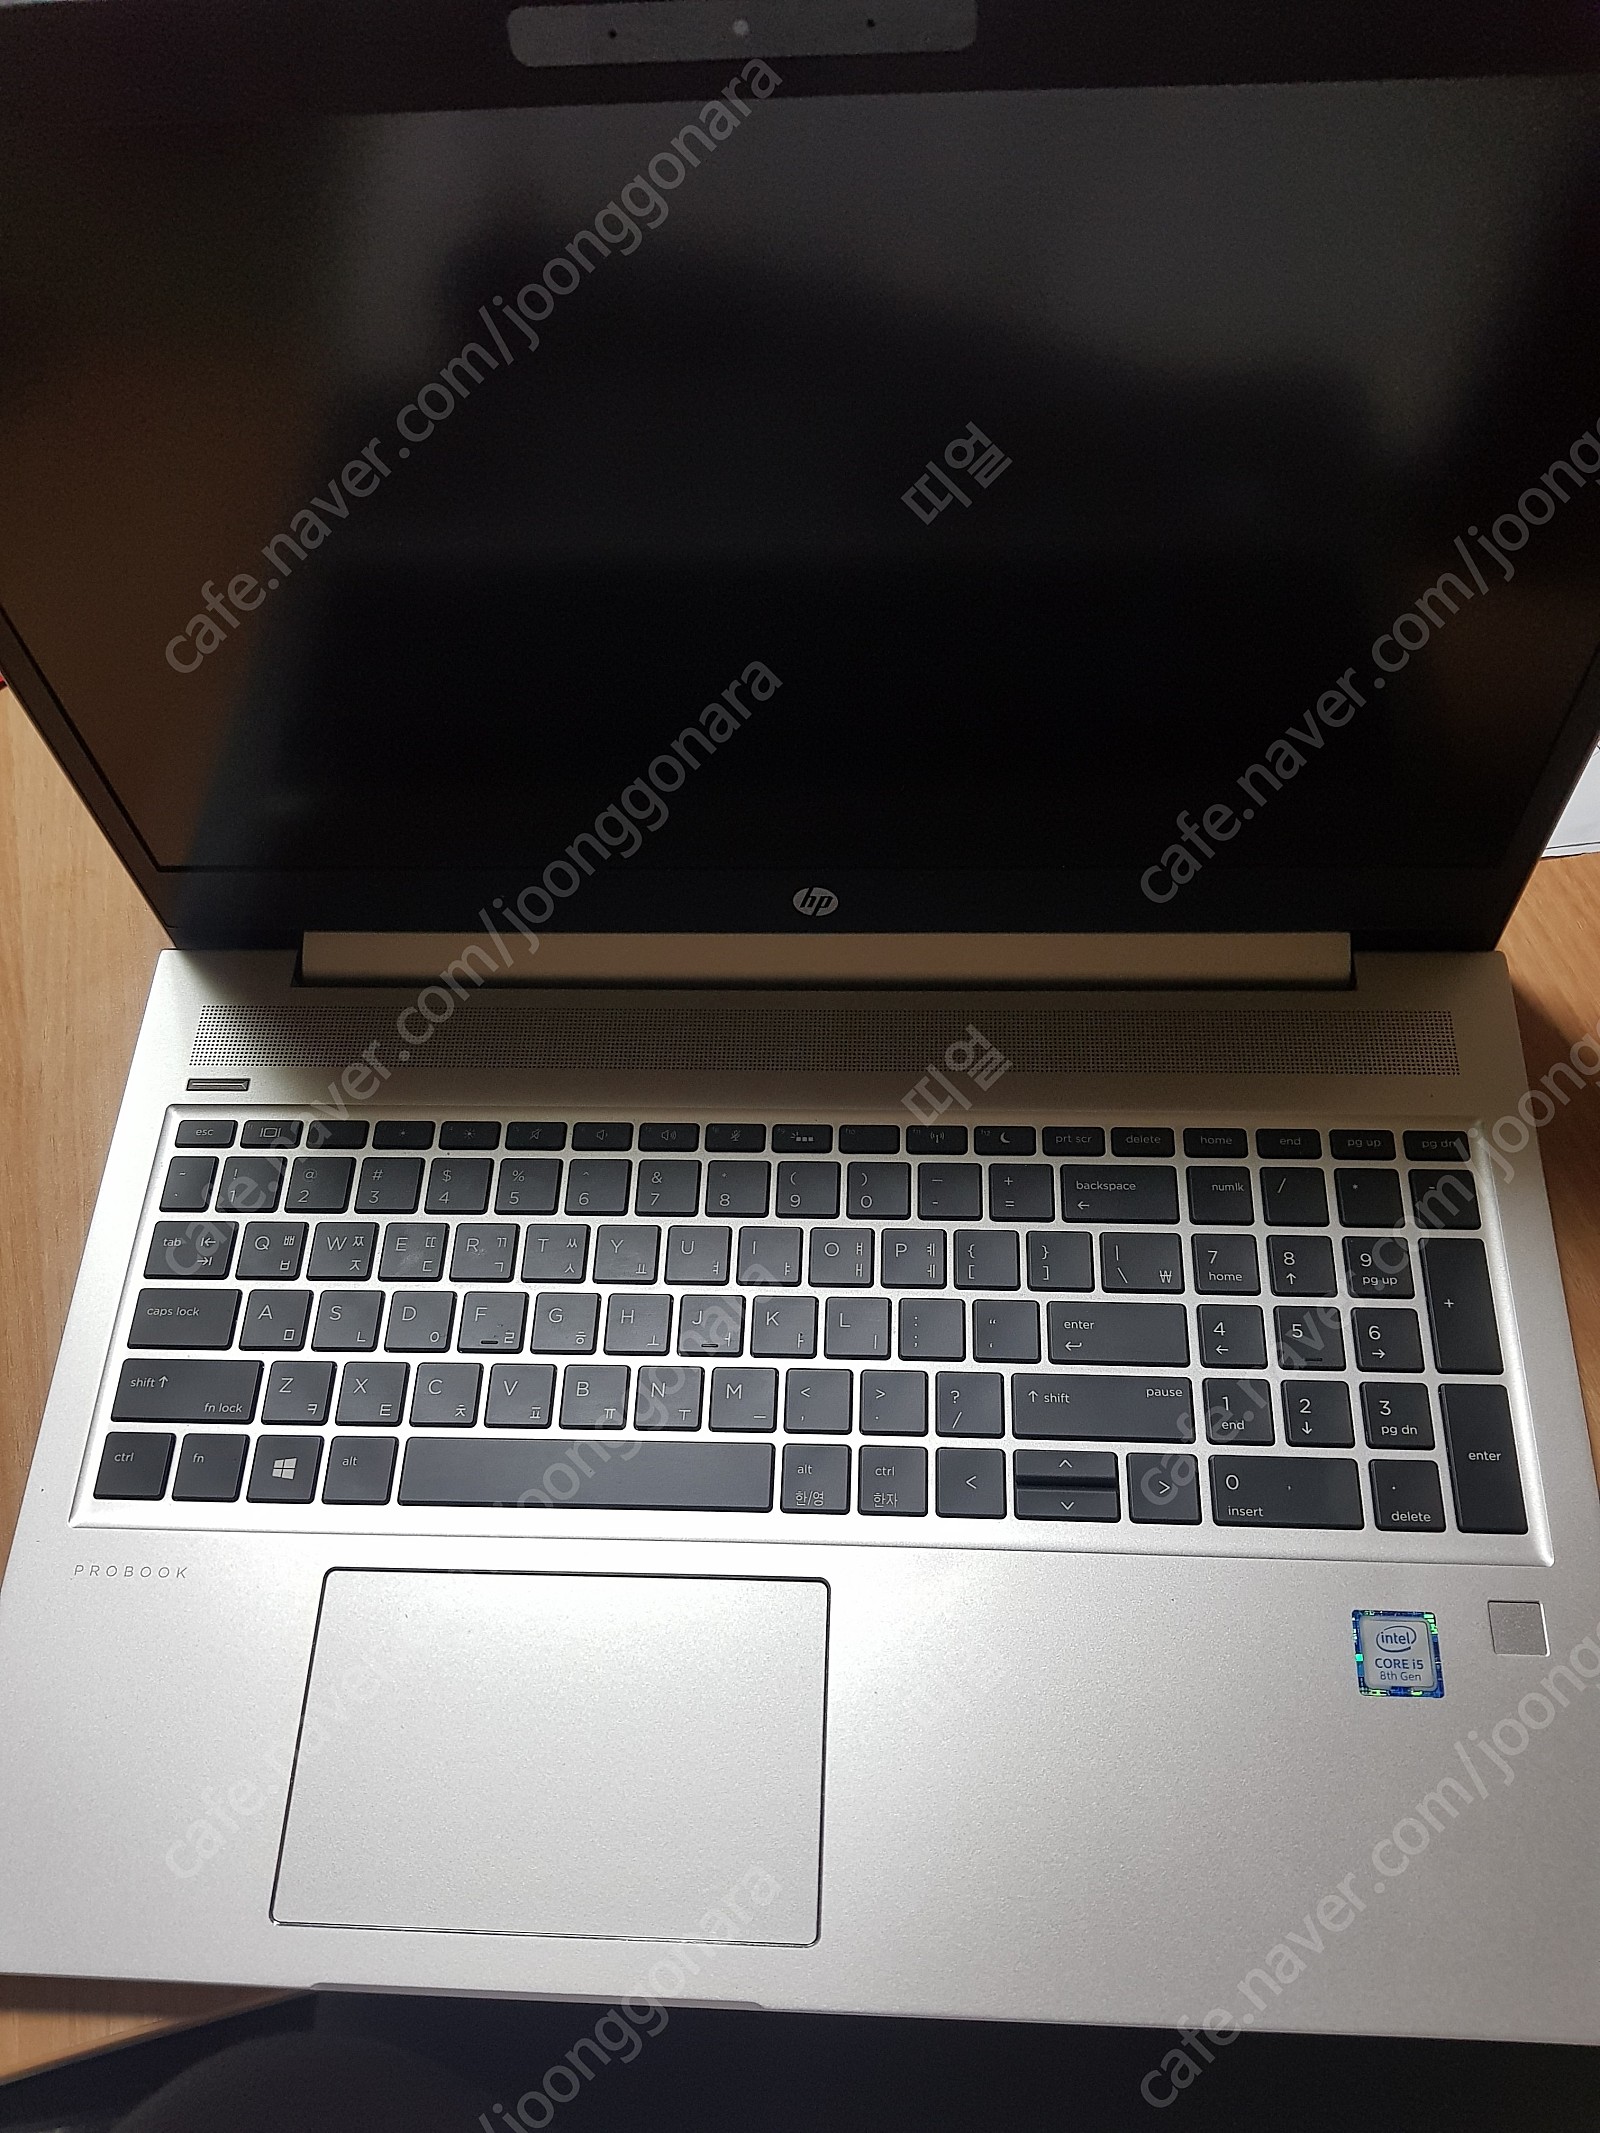 HP ProBook 450 G6 6CY52PA 노트북 거의 새제품 판매합니다 (2021. 3. 15일구매)